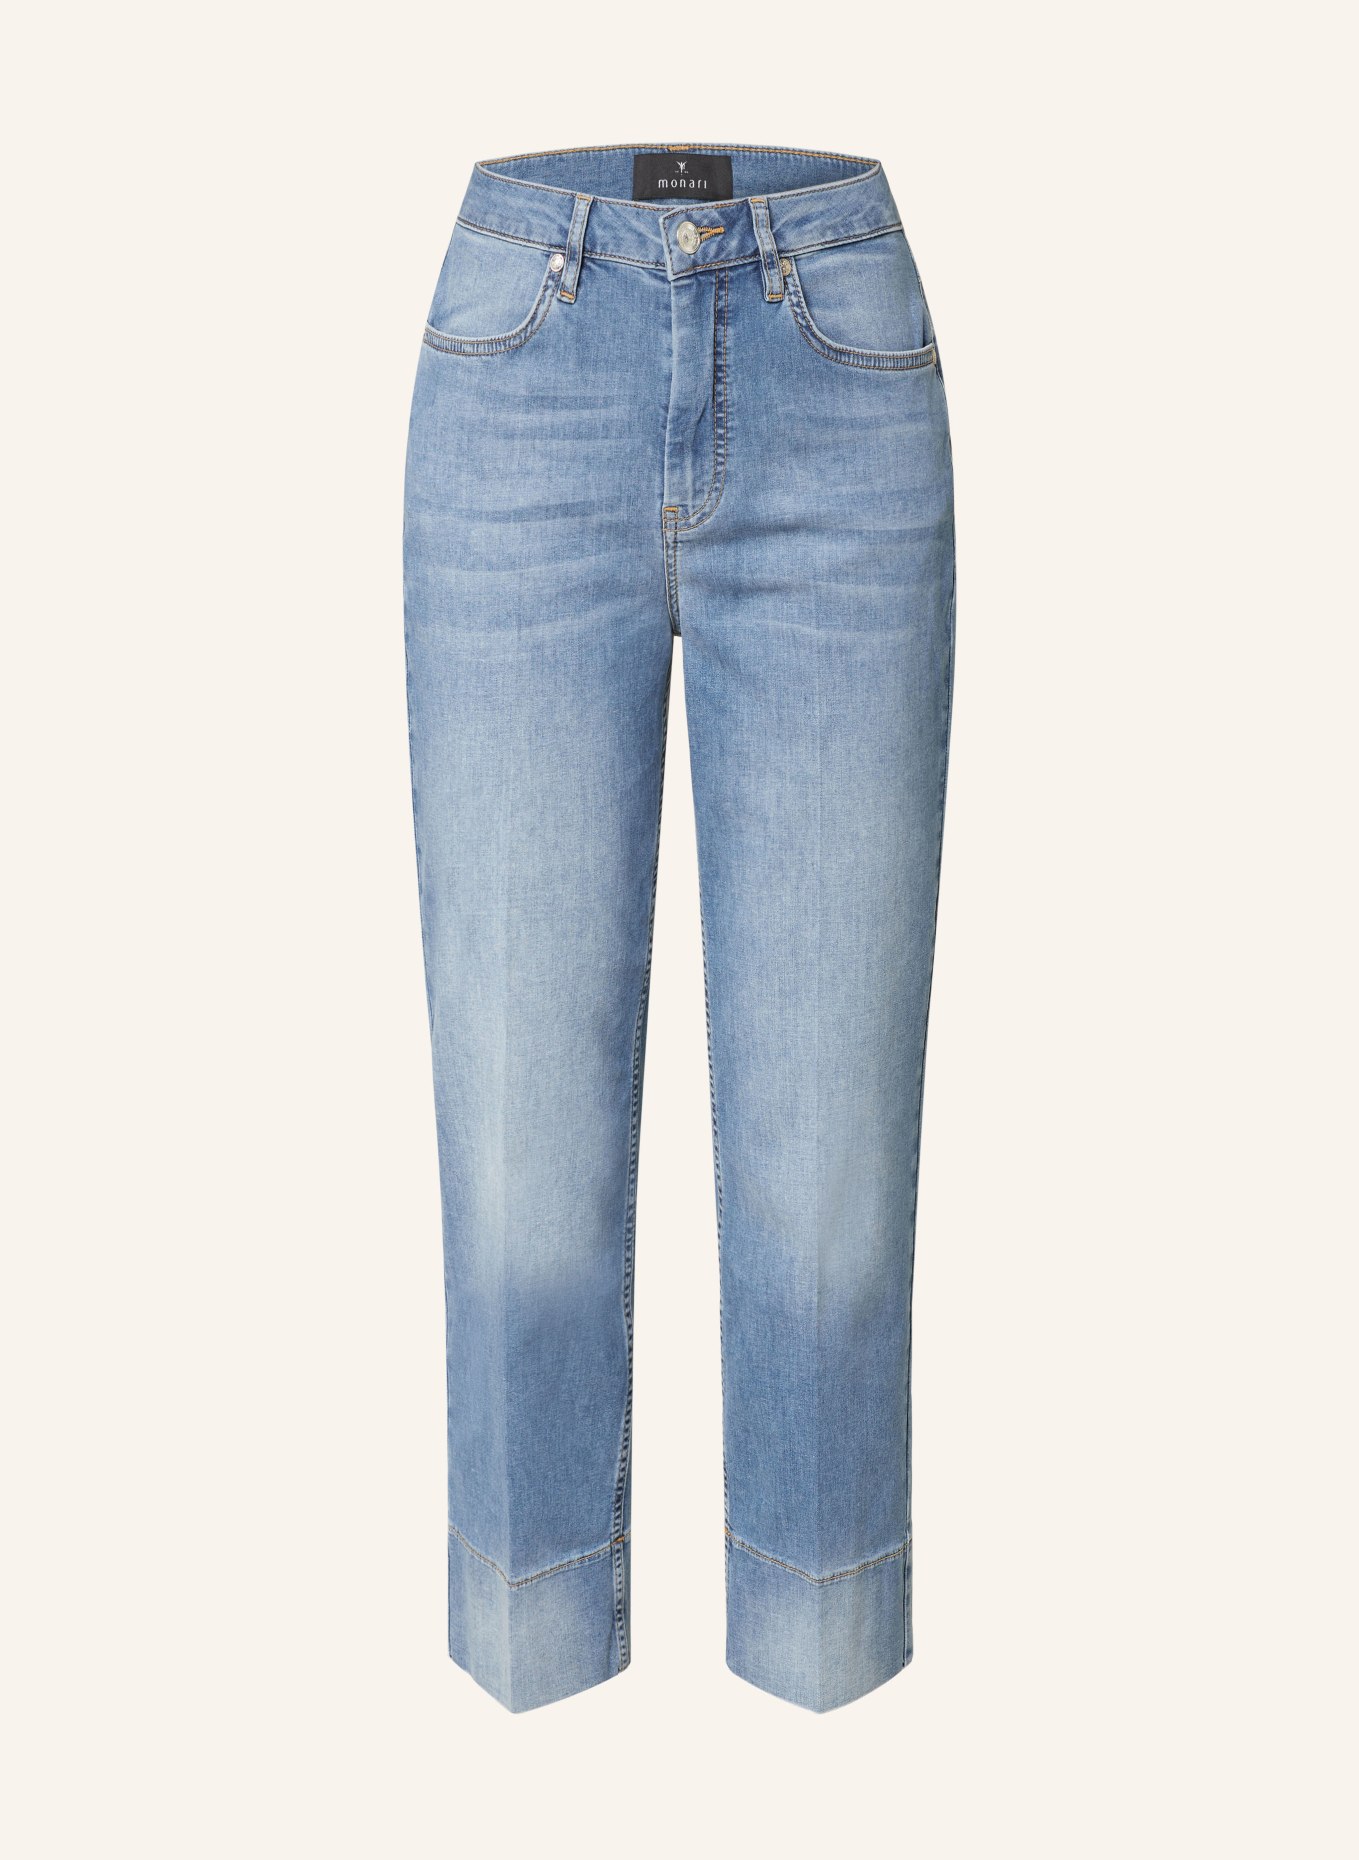 monari 7/8-Jeans, Farbe: 750 jeans (Bild 1)